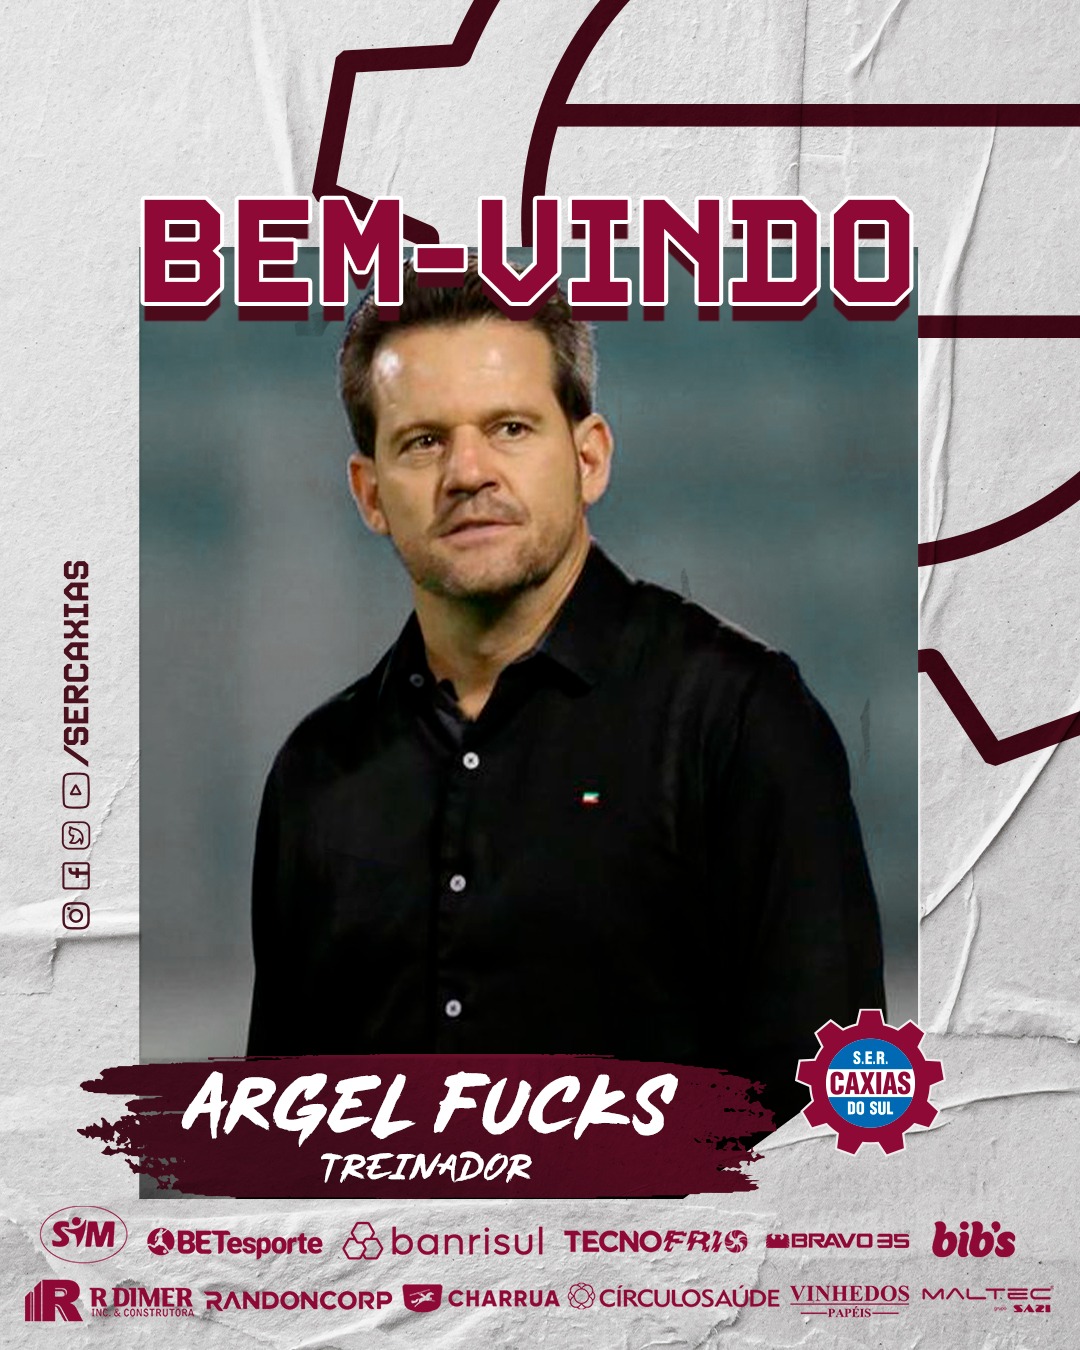 Argel Fucks é confirmado como novo treinador do Caxias